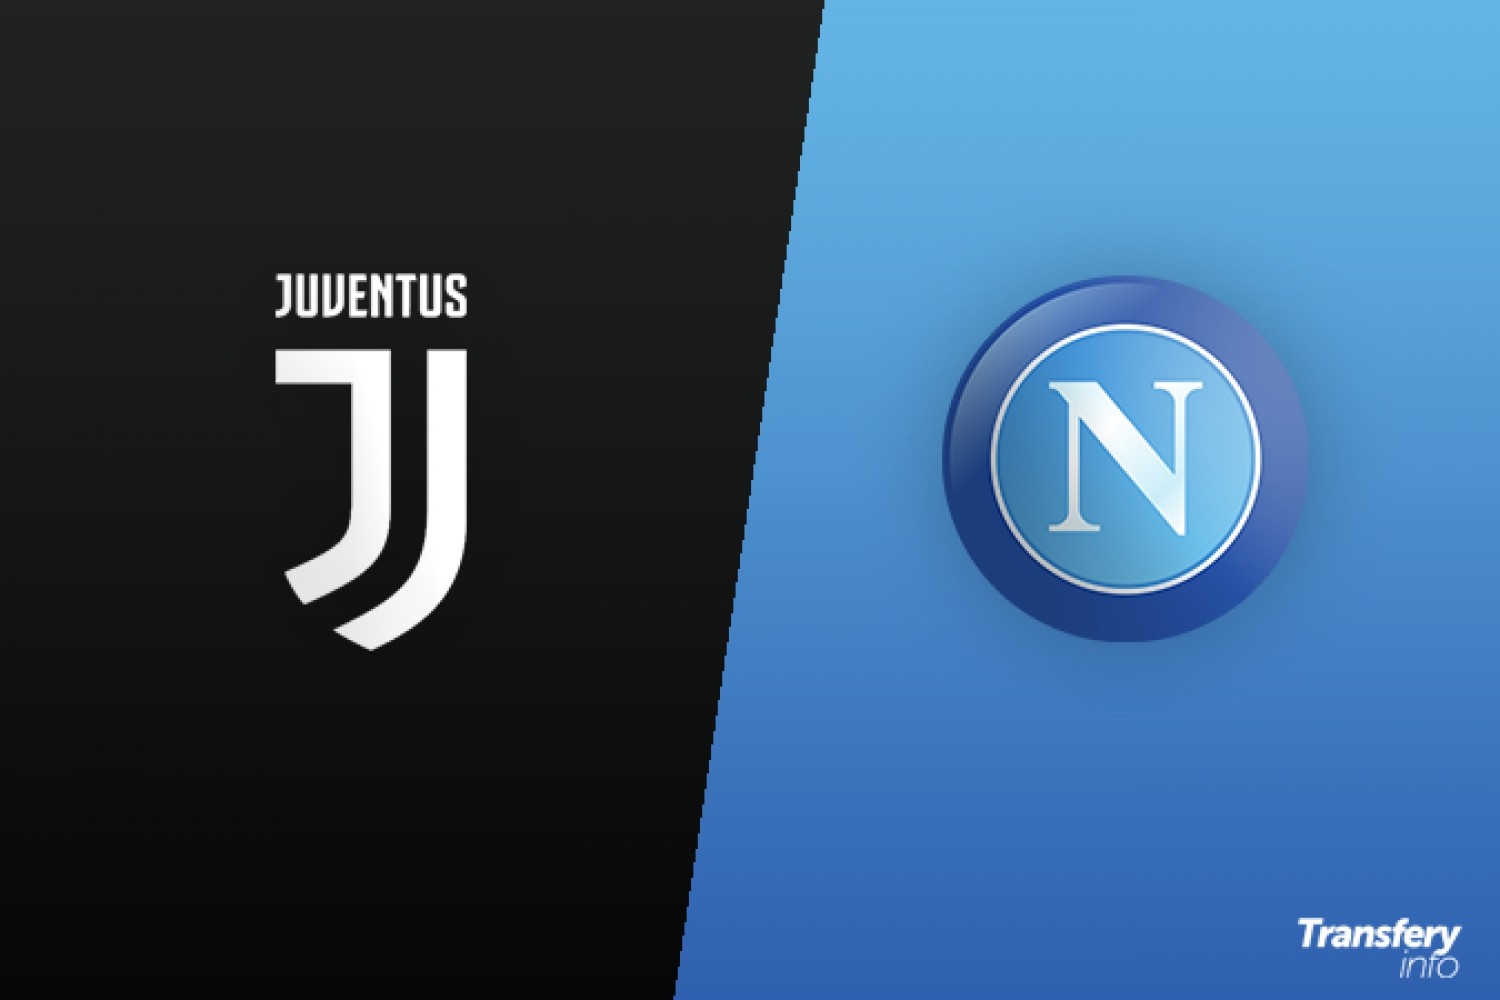 Włoskie śledztwo w sprawie nieprawidłowości przy transferach. Juventus i Napoli w głównych rolach